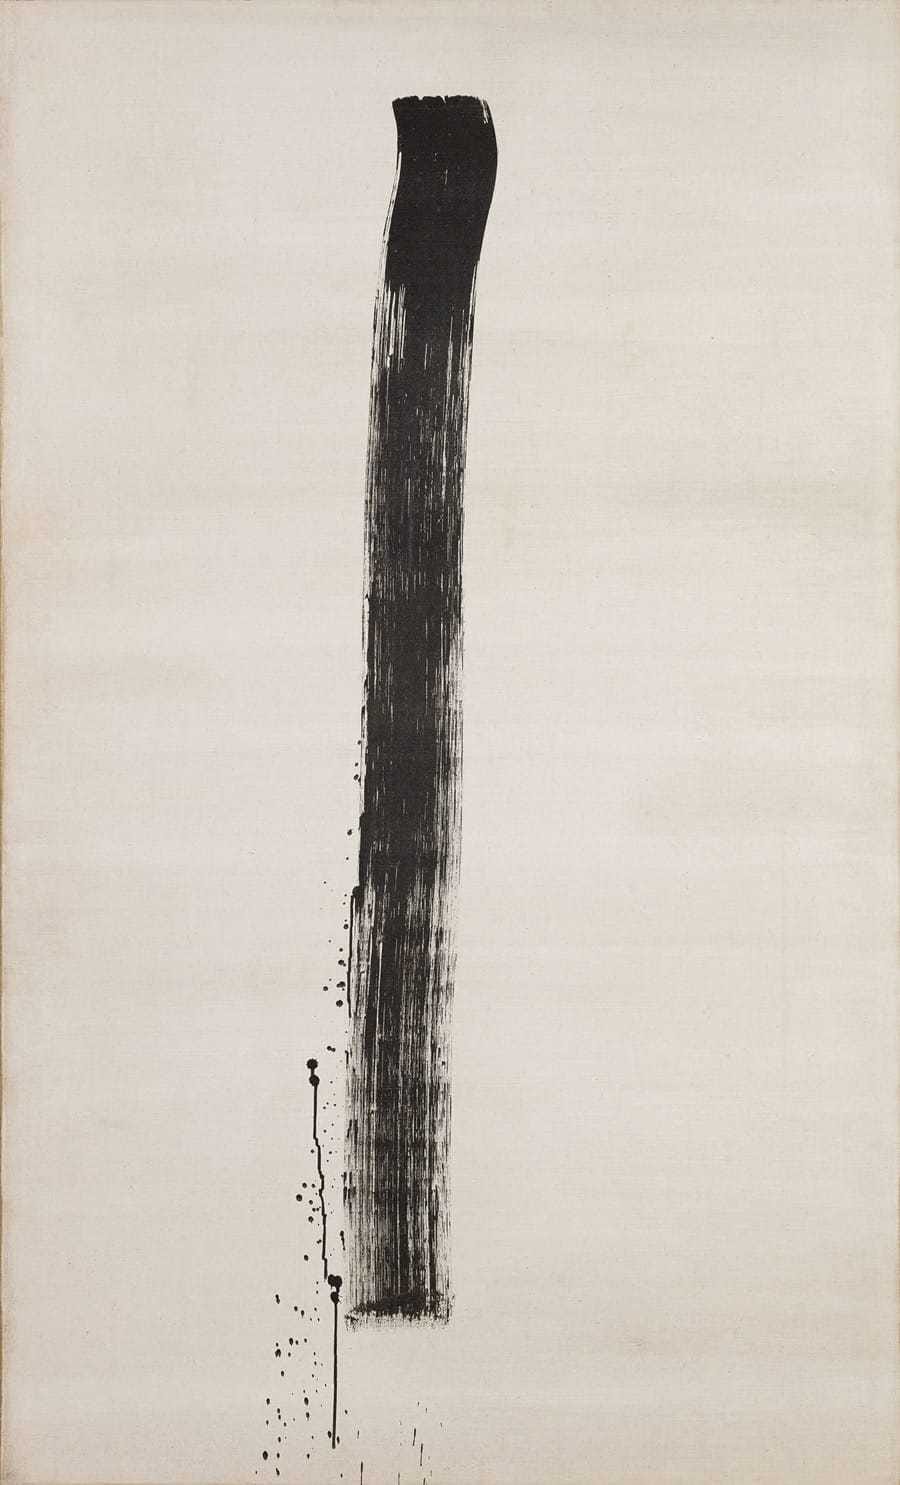 Jean Degottex (1918-1988). "ETC IV". Encre de Chine sur toile. 30 mars 1967. Paris, musée d'Art moderne.